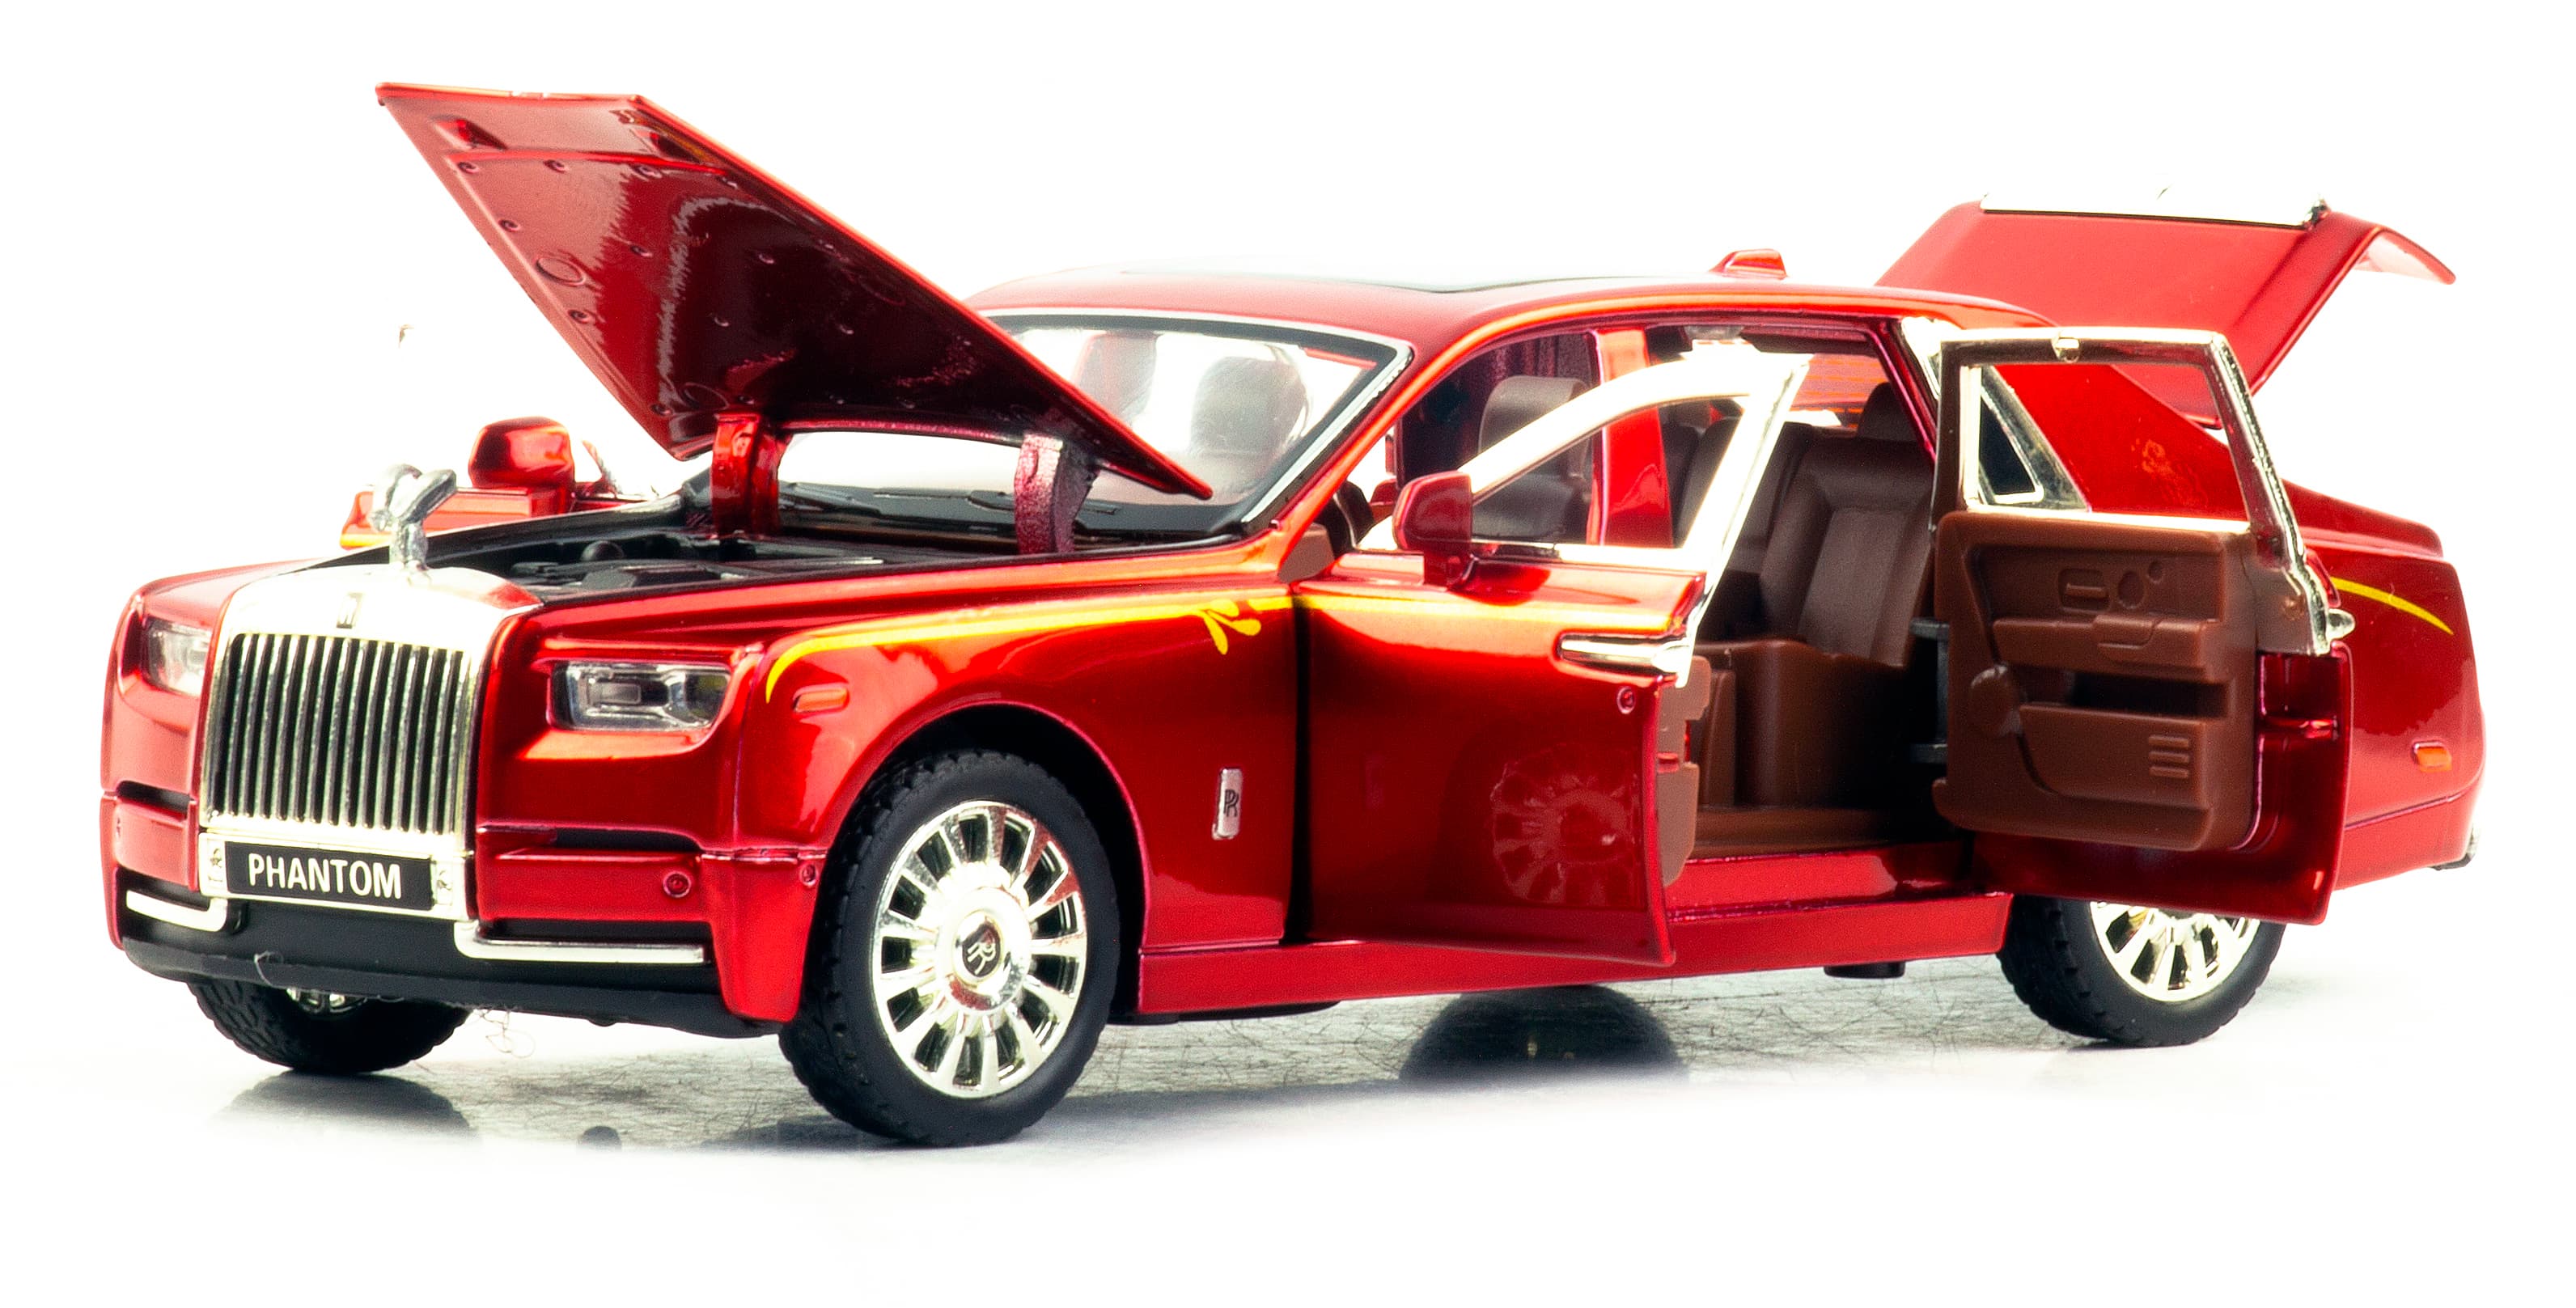 Металлическая машинка Newao Model 1:32 «Rolls-Royce Phantom» XA3229B, 17 см., инерционная, свет, звук / Красный